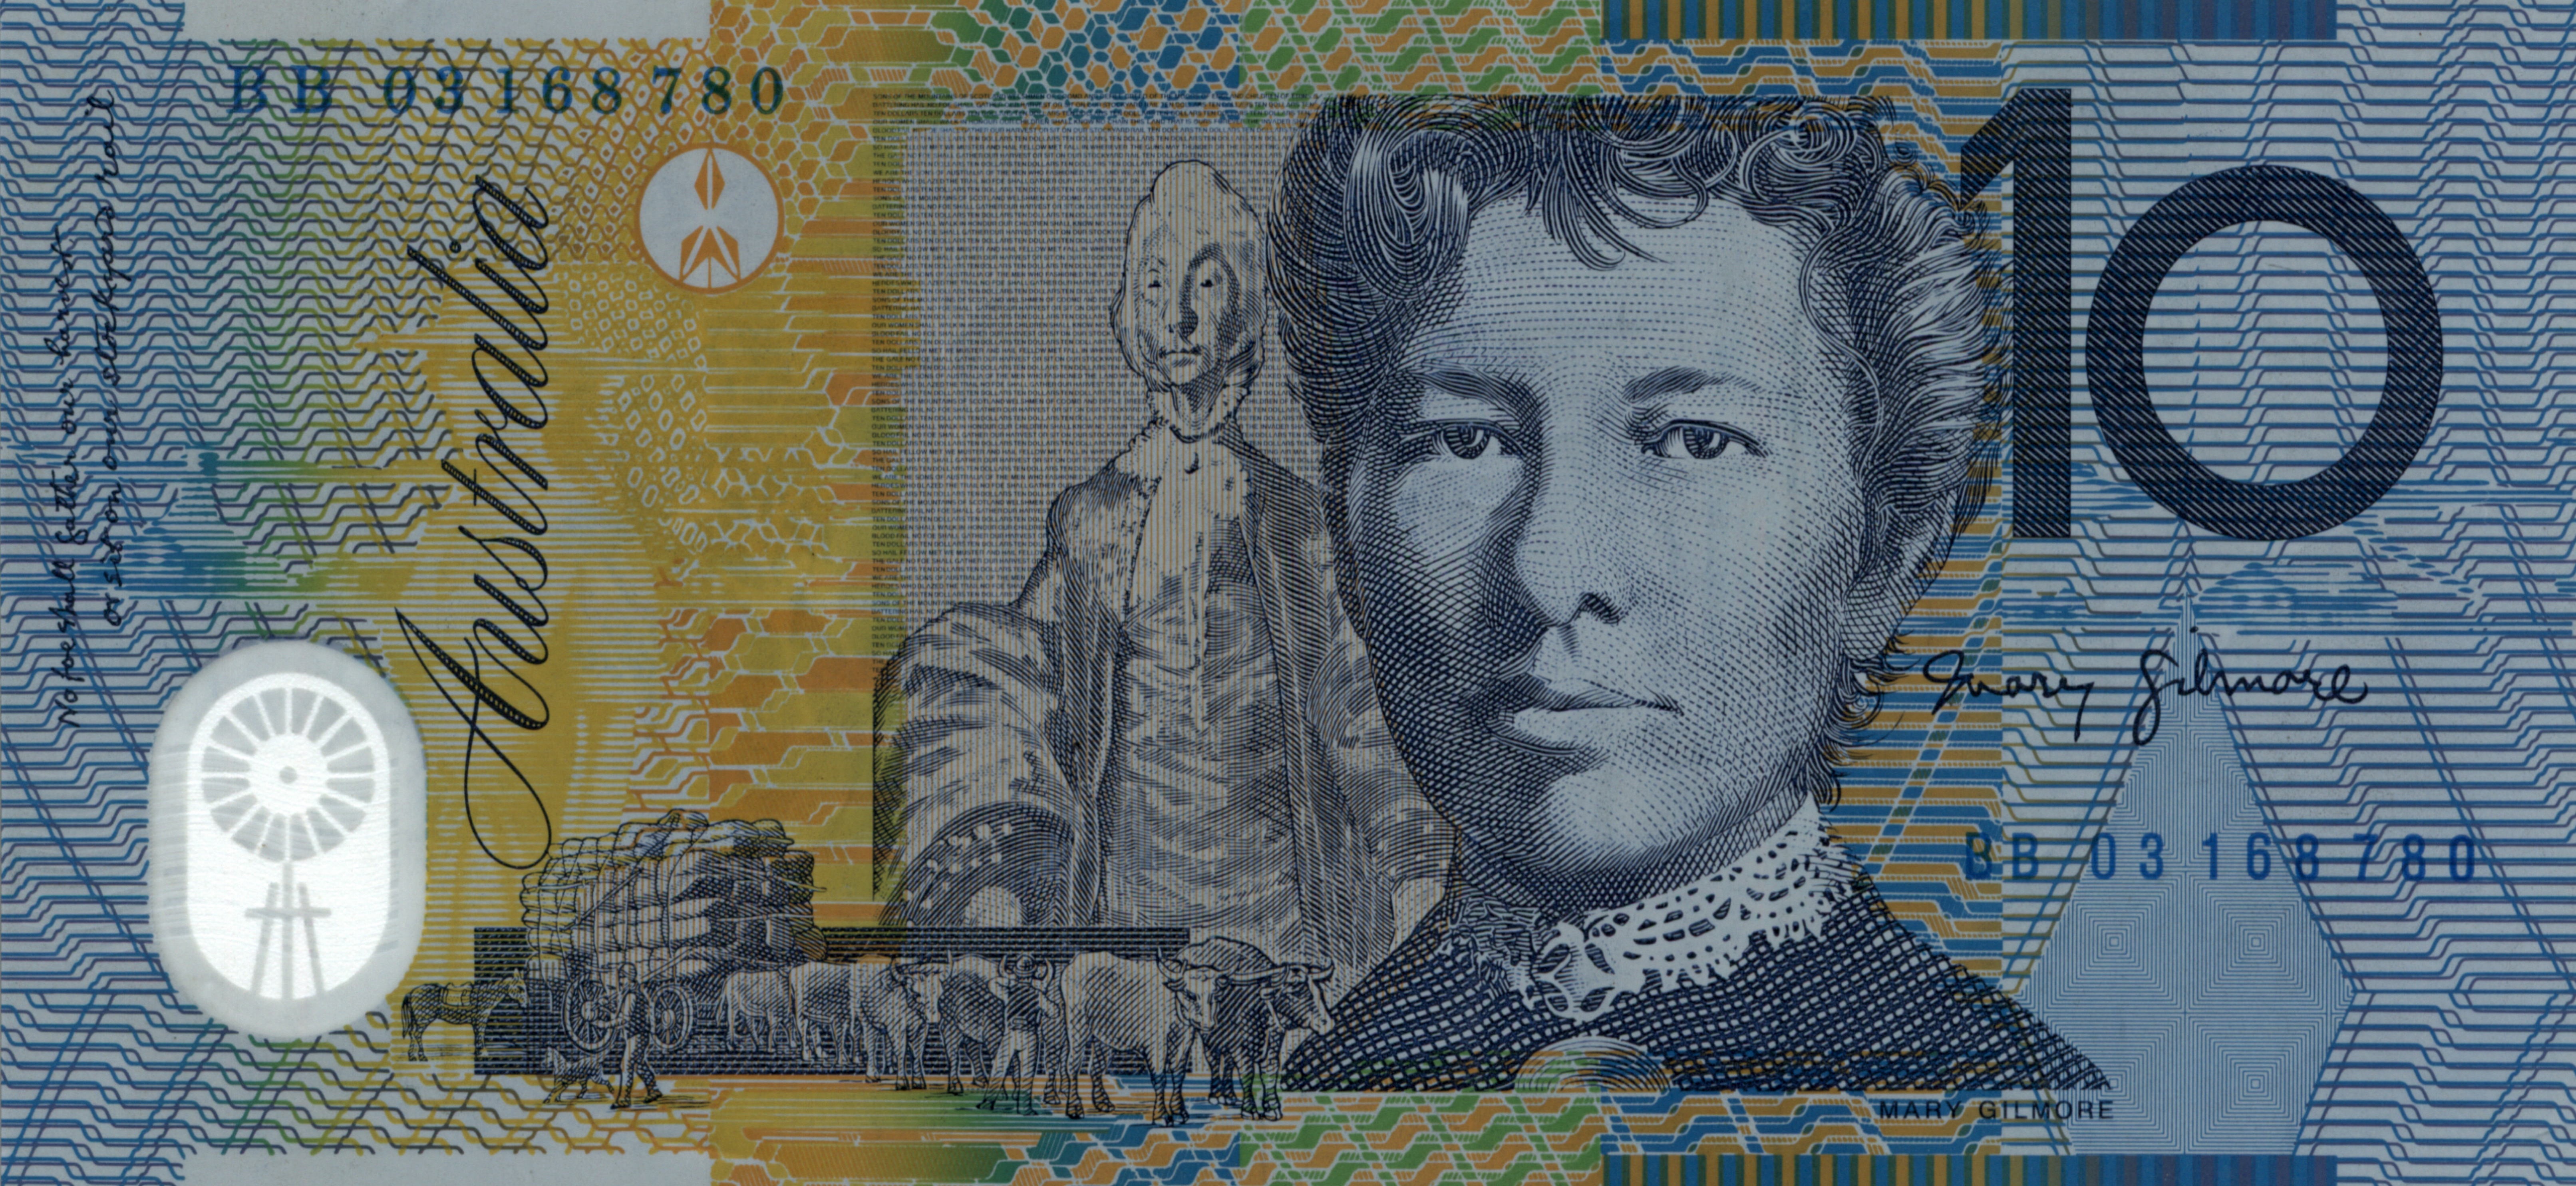 Австралийская валюта. 10 Долларов Австралии. Банкнота Австралия 10 долларов. Австралийский доллар банкноты. Купюра Австралии 10.